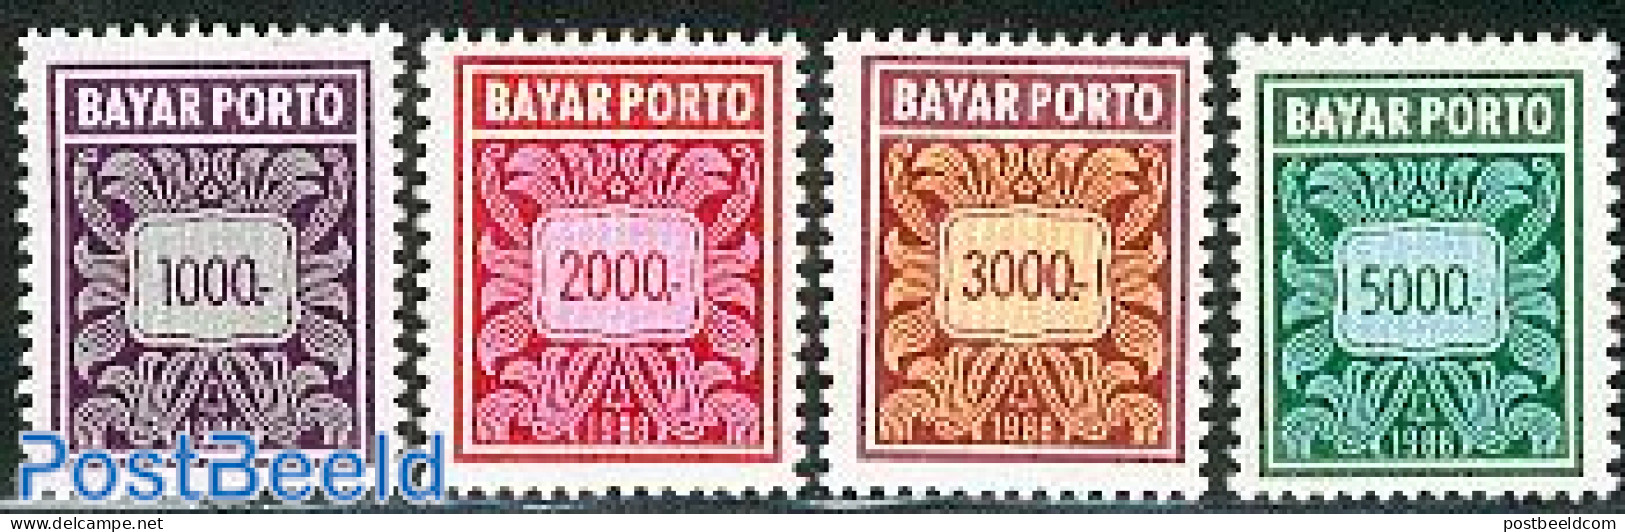 Indonesia 1988 Postage Due 4v, Mint NH - Indonesien